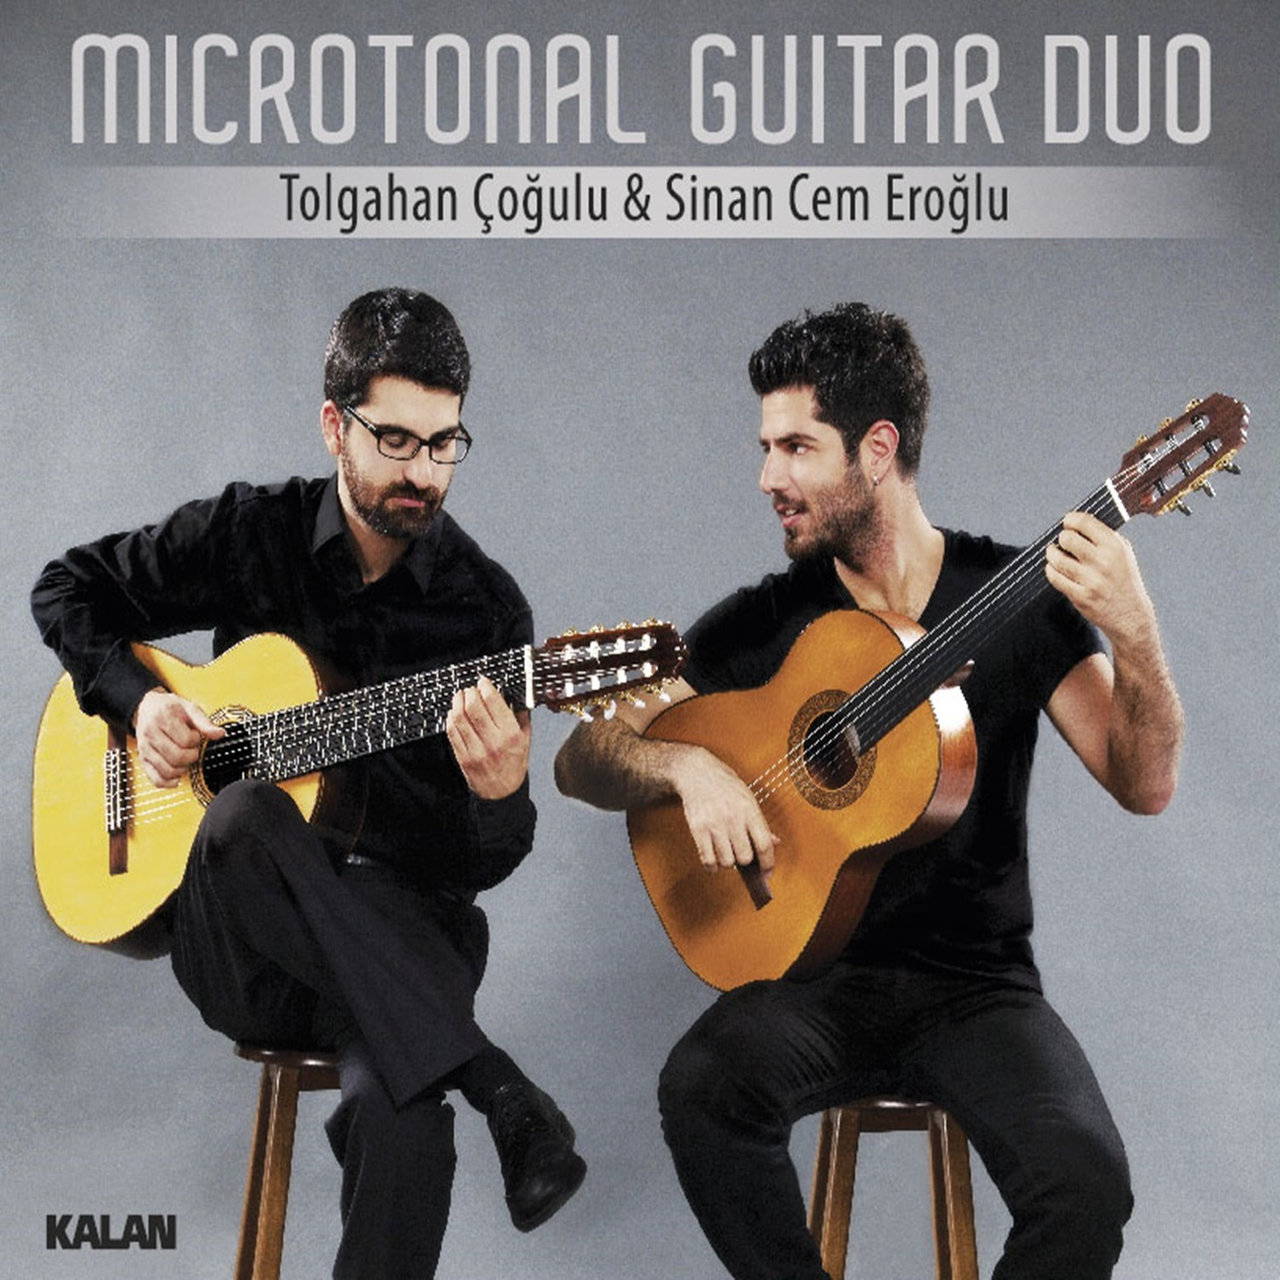 Tolgahan Çoğulu, Sinan Cem Eroğlu Microtonal Guitar Duo